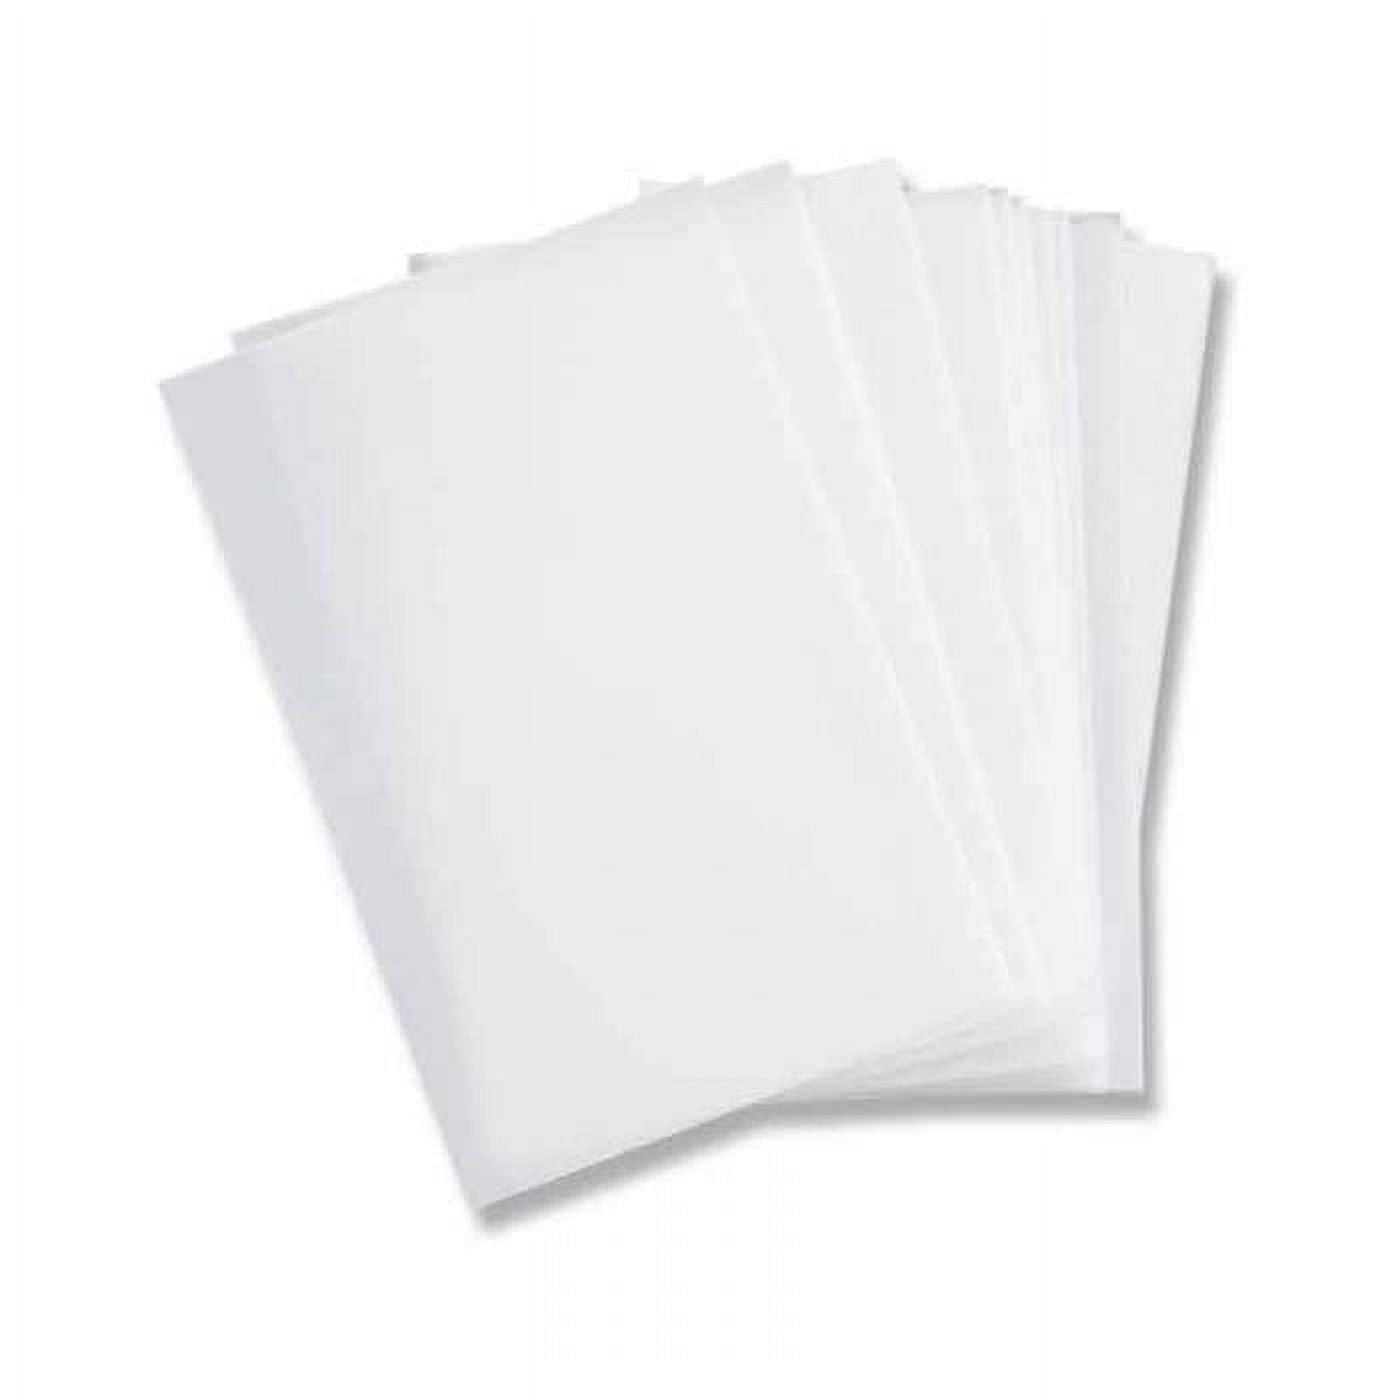 Mylar sheets - 10pcs A4 or A5 size plastic stencil sheets – QBIX Stencils